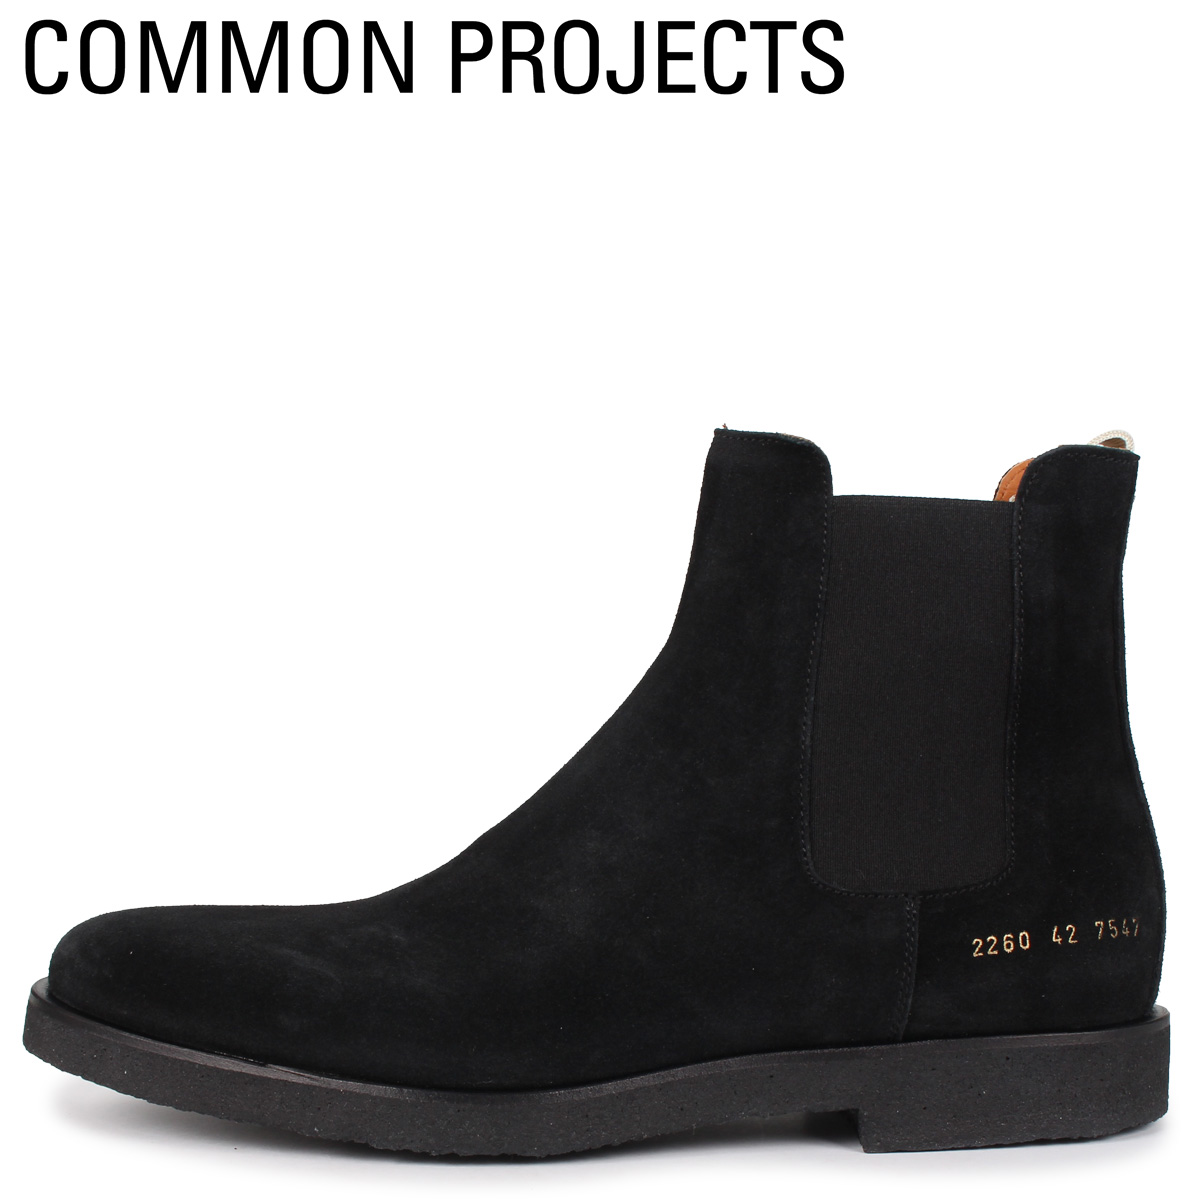 送料無料 あす楽対応 26cm-29cm コモンプロジェクト Common Projects チェルシー CHELSEA BOOT IN ブーツ サイドゴアブーツ メンズ 黒 2260-7547 SUEDE 最高品質の 2021高い素材 ブラック